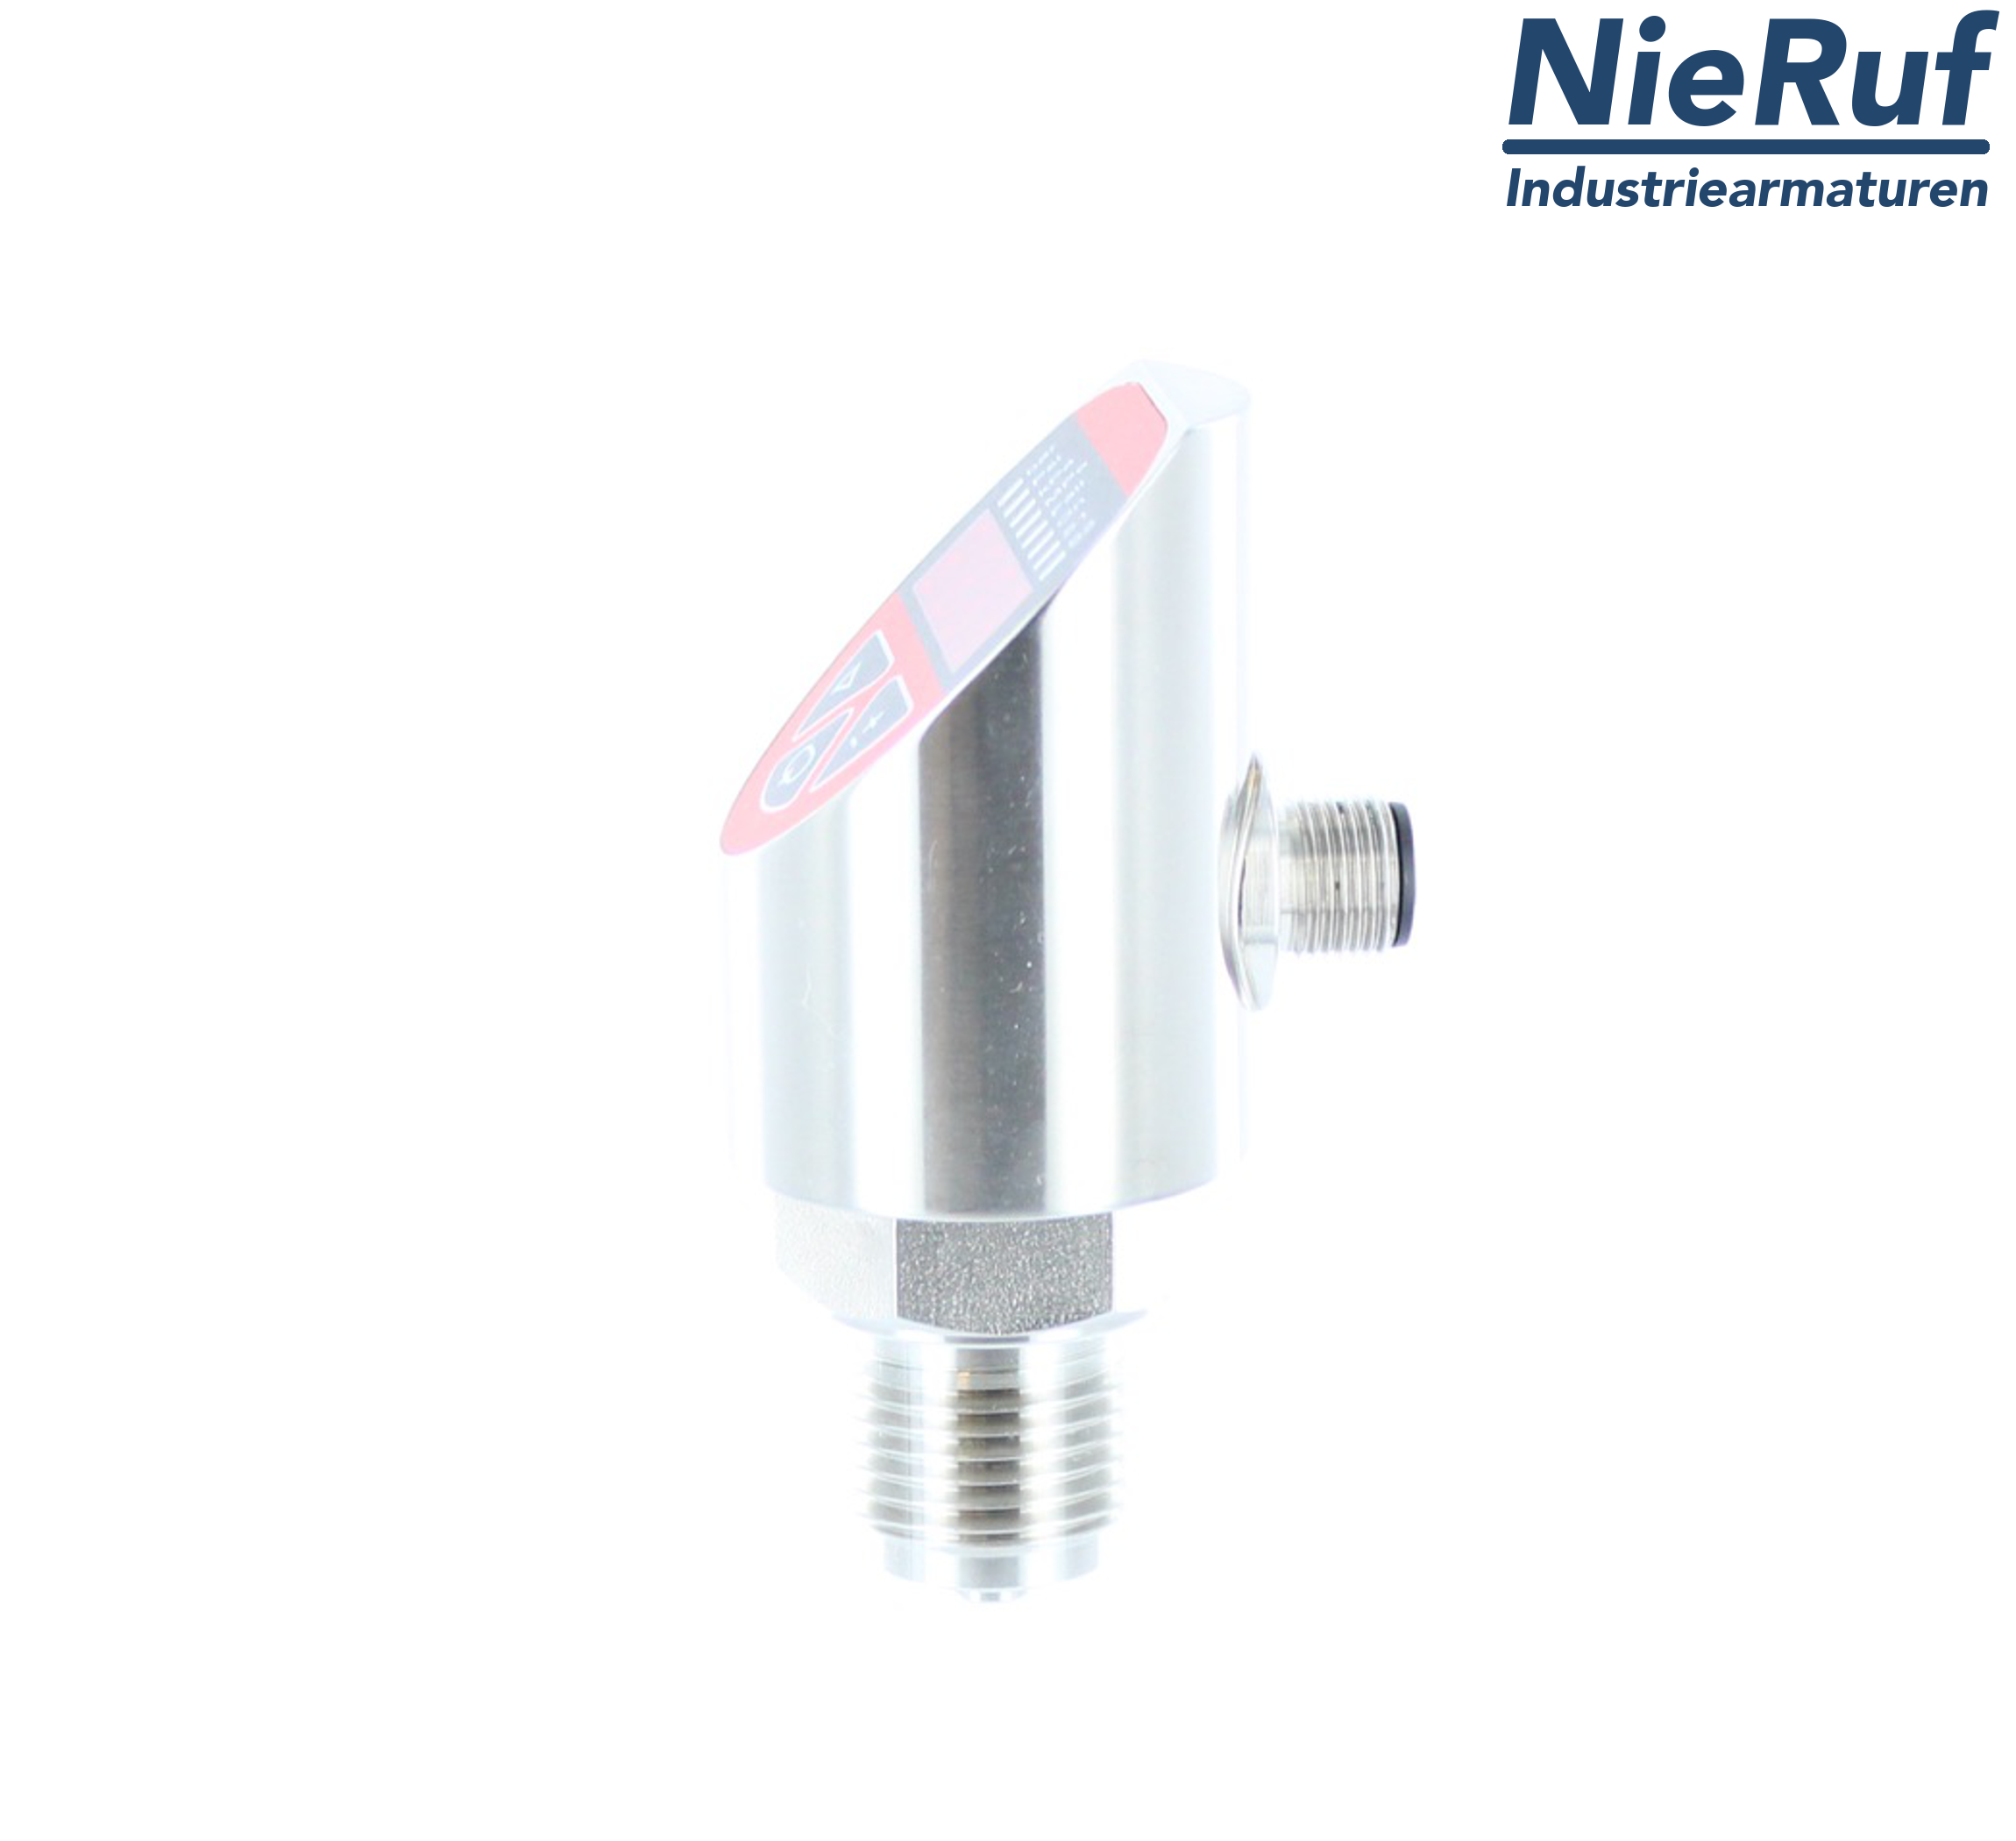 digital pressure sensor G 1/2" B IB 4-wire: 1xPNP, 1x4 - 20mA, Desina FPM 0,0 - 600,0 bar